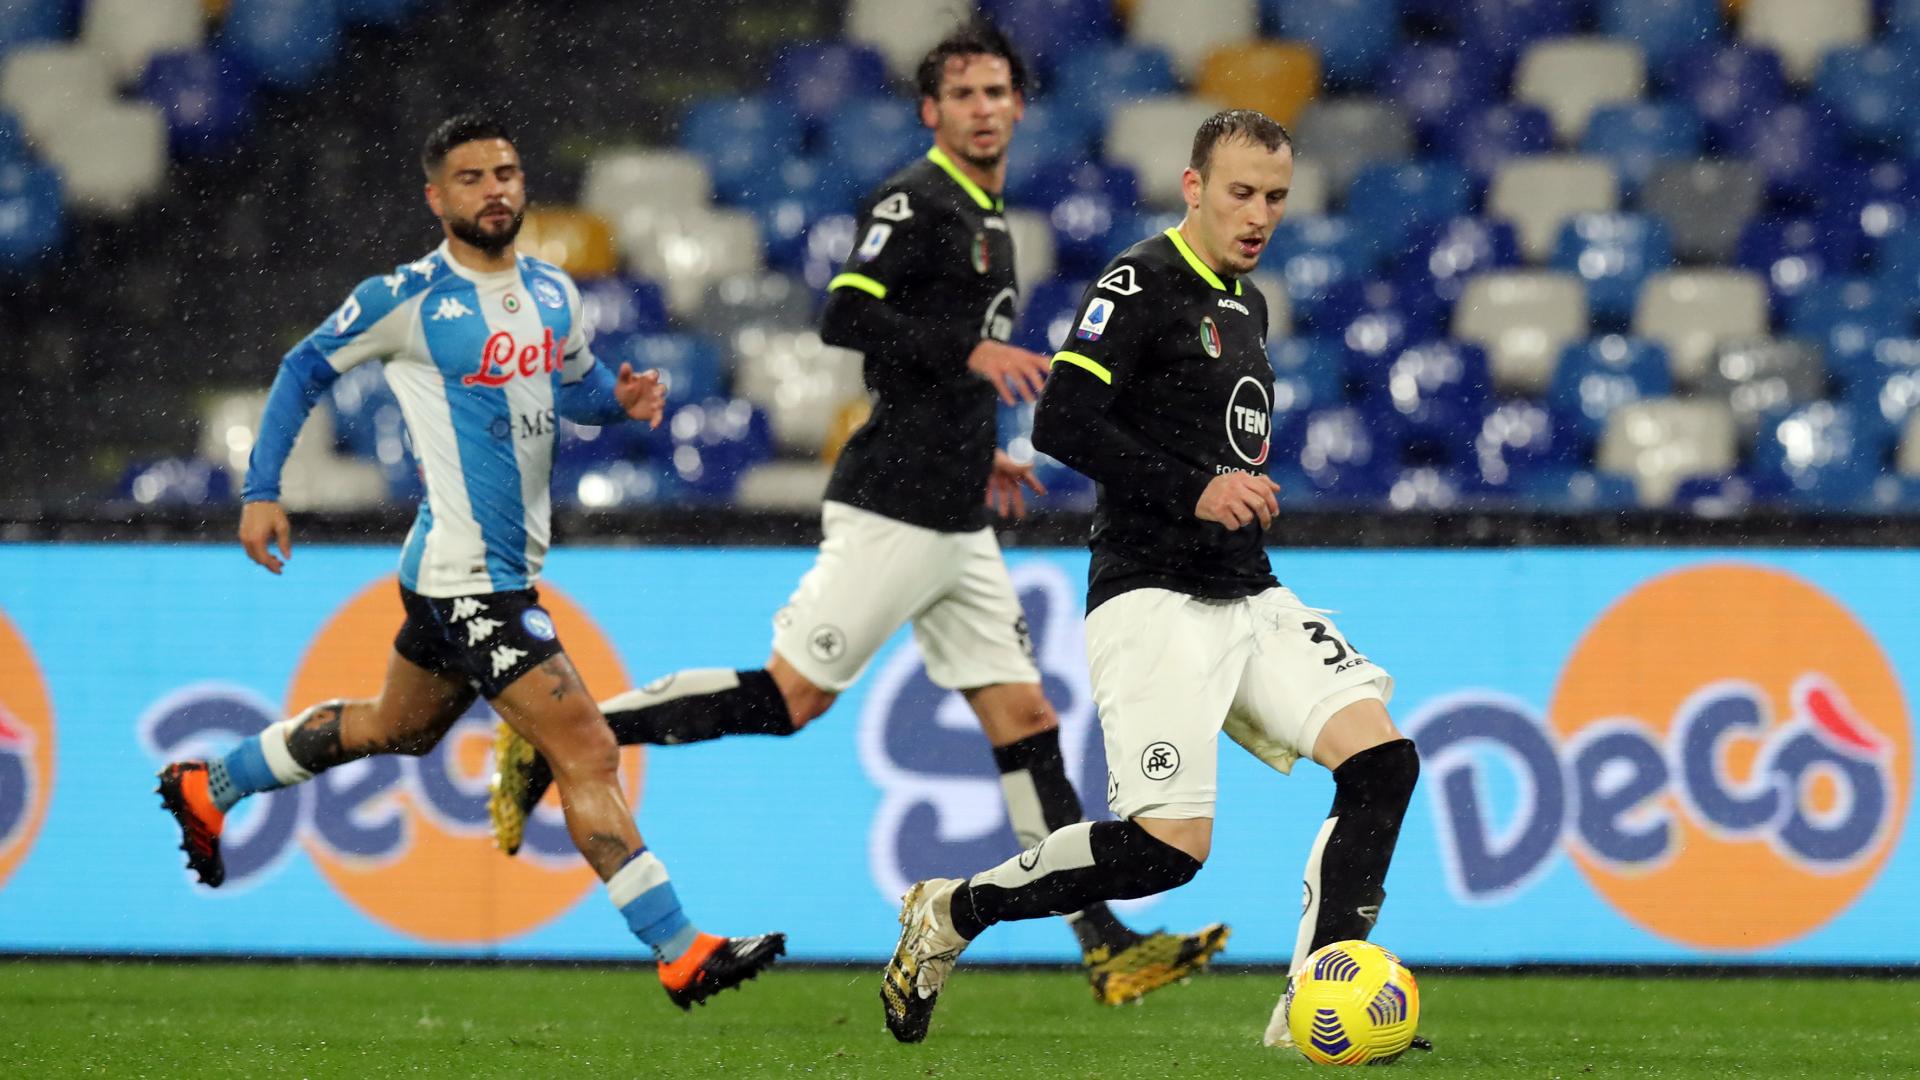 Coppa Italia 20/21: il match report di Napoli-Spezia